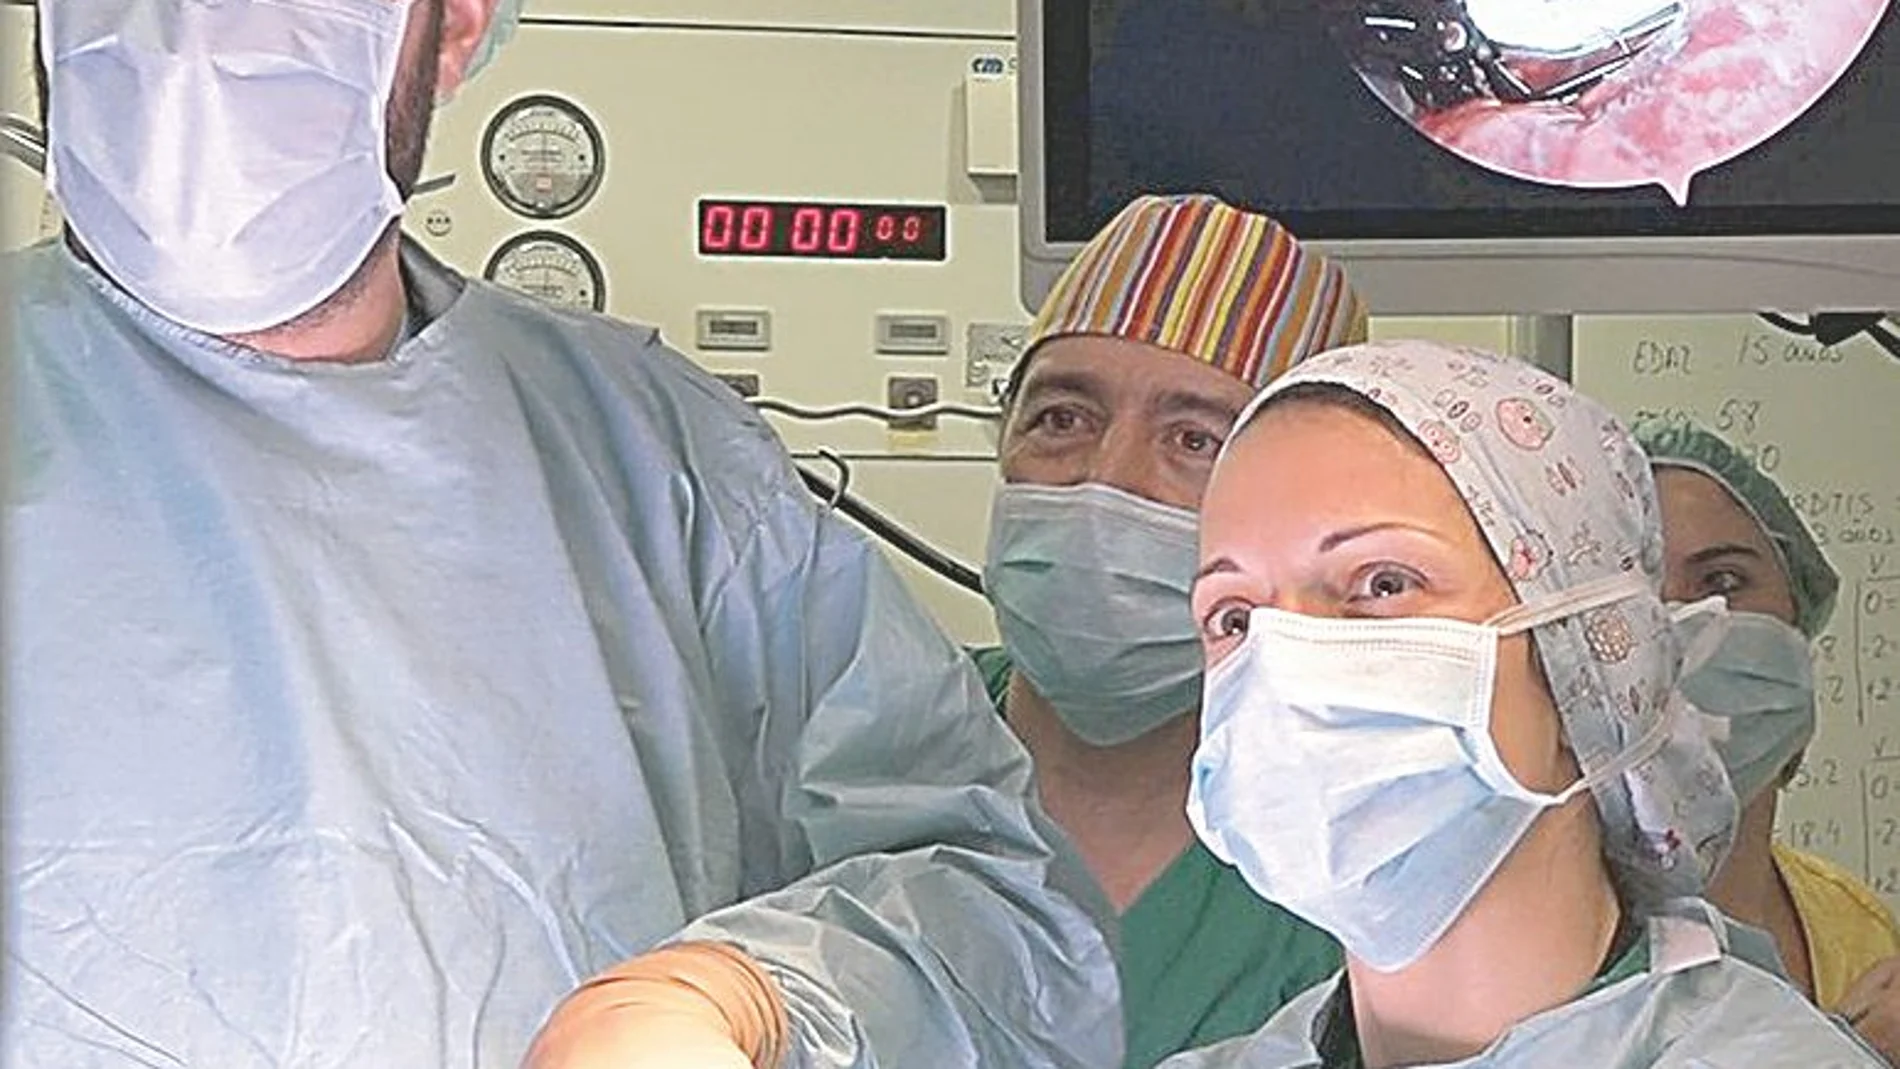 Parte del equipo de cirugía del hospital madrileño que intervino en la operación